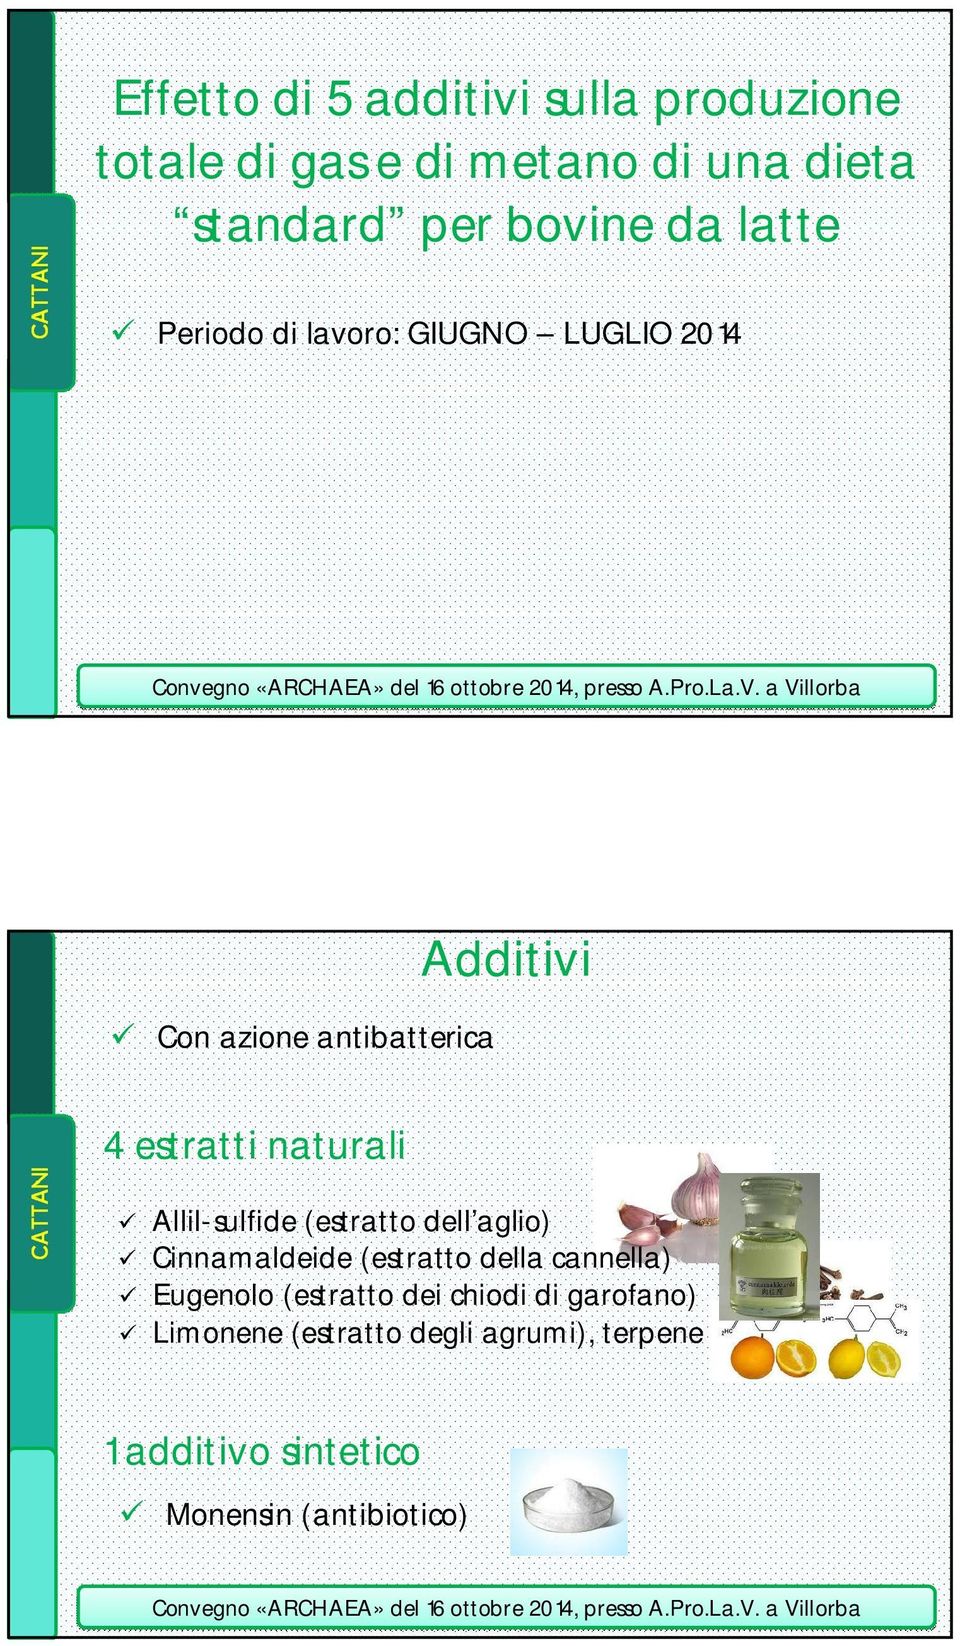 Allil-sulfide (estratto dell aglio) Cinnamaldeide (estratto della cannella) Eugenolo (estratto dei